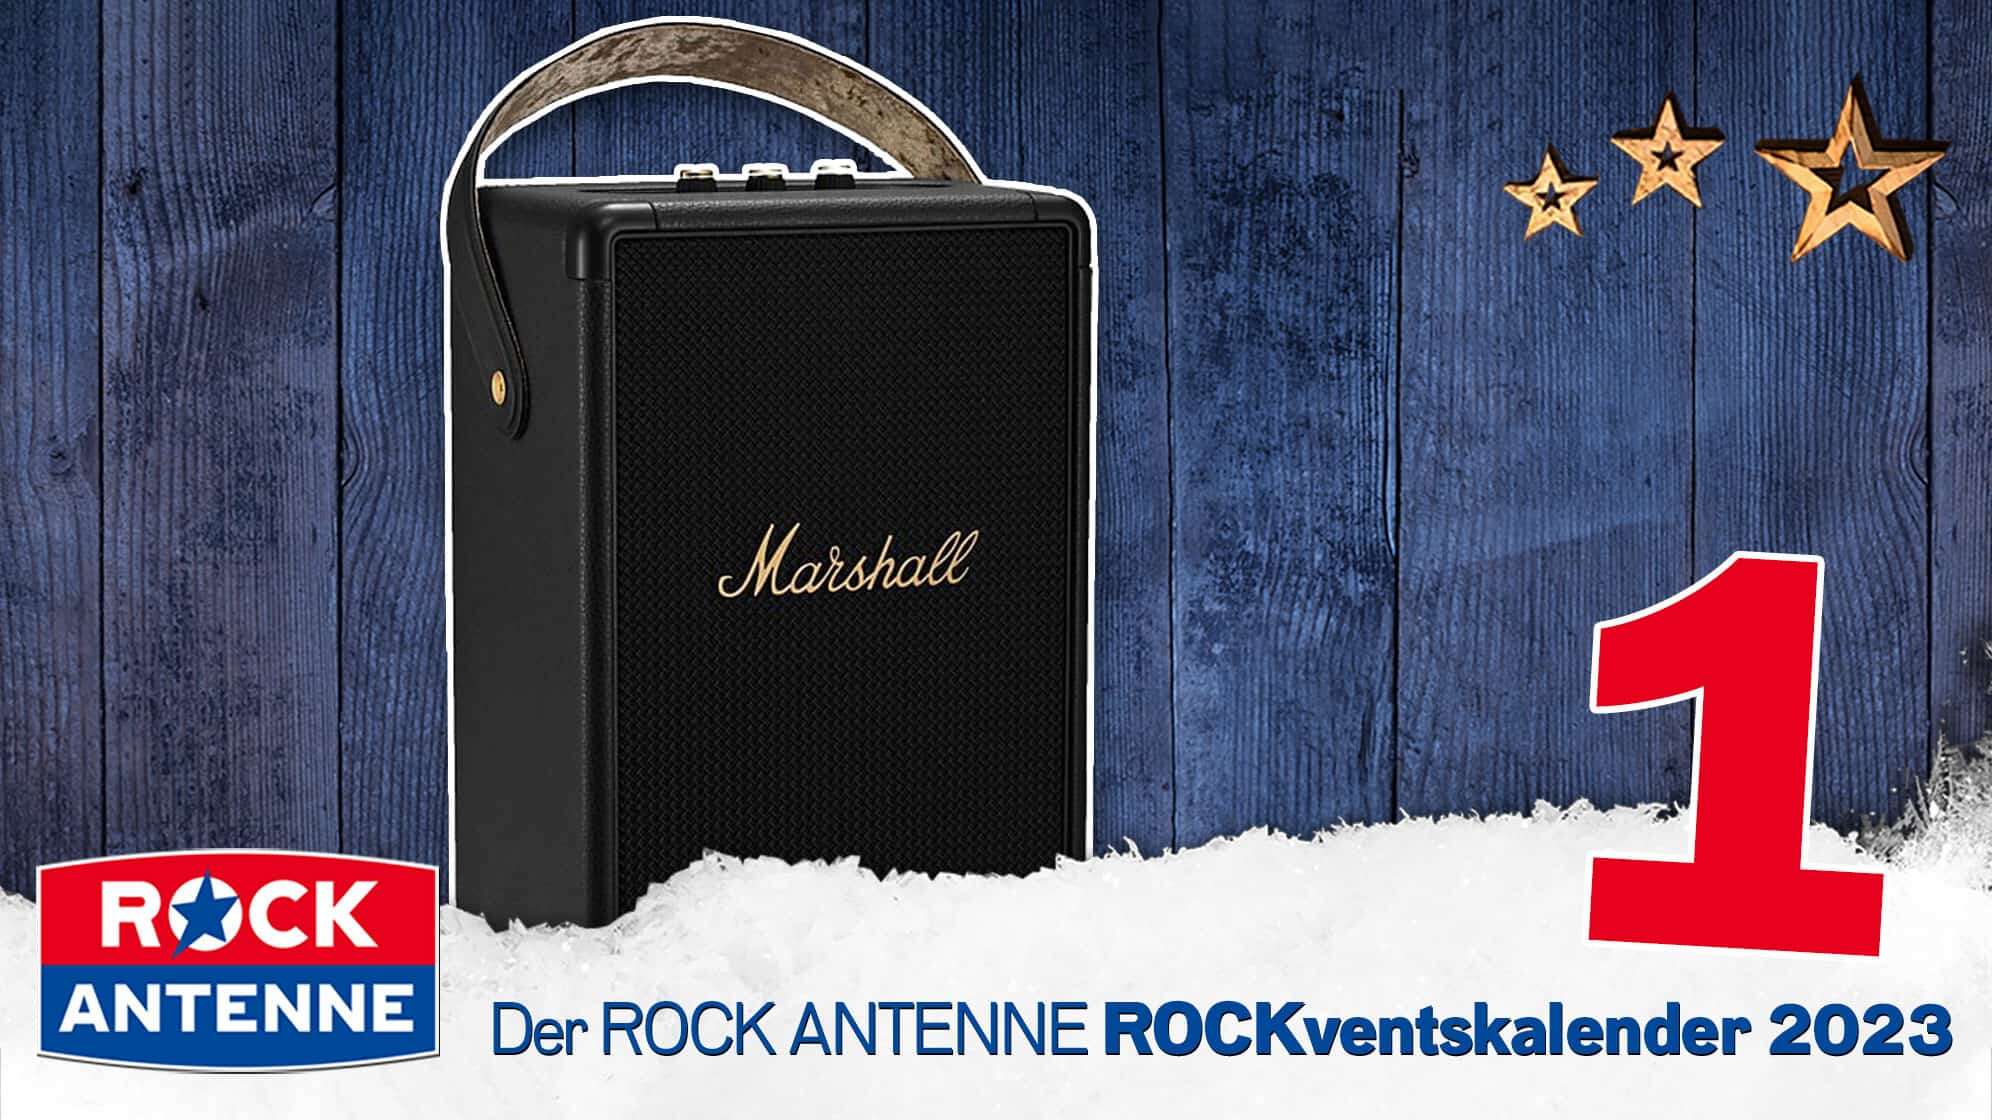 ROCK ANTENNE ROCKventskalender Türchen 1: Ein Marshall Bluetooth XXL Lautsprecher